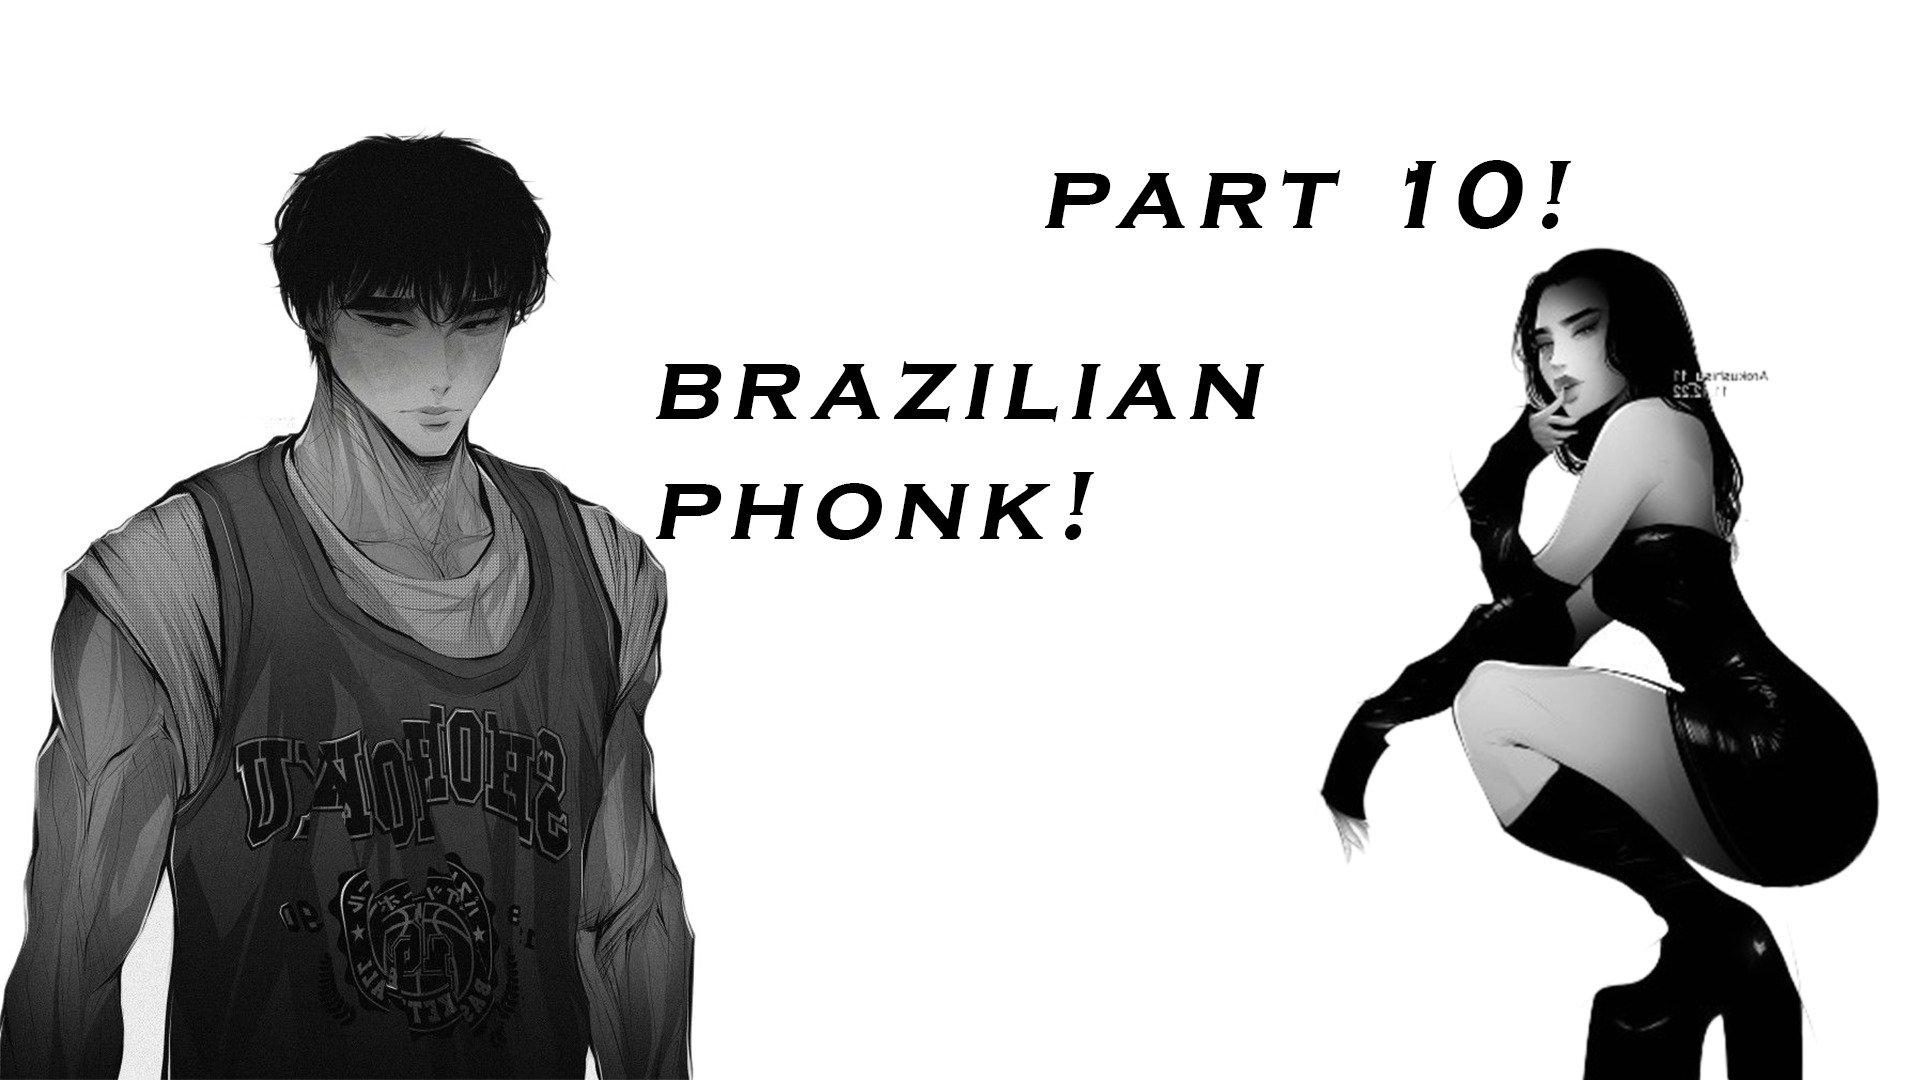 Brazilian phonk 1 hour. Бразил ФОНК. Бразильский Phonk. Бразилиан ФОНК ава. Aggressive Brazilian Phonk.